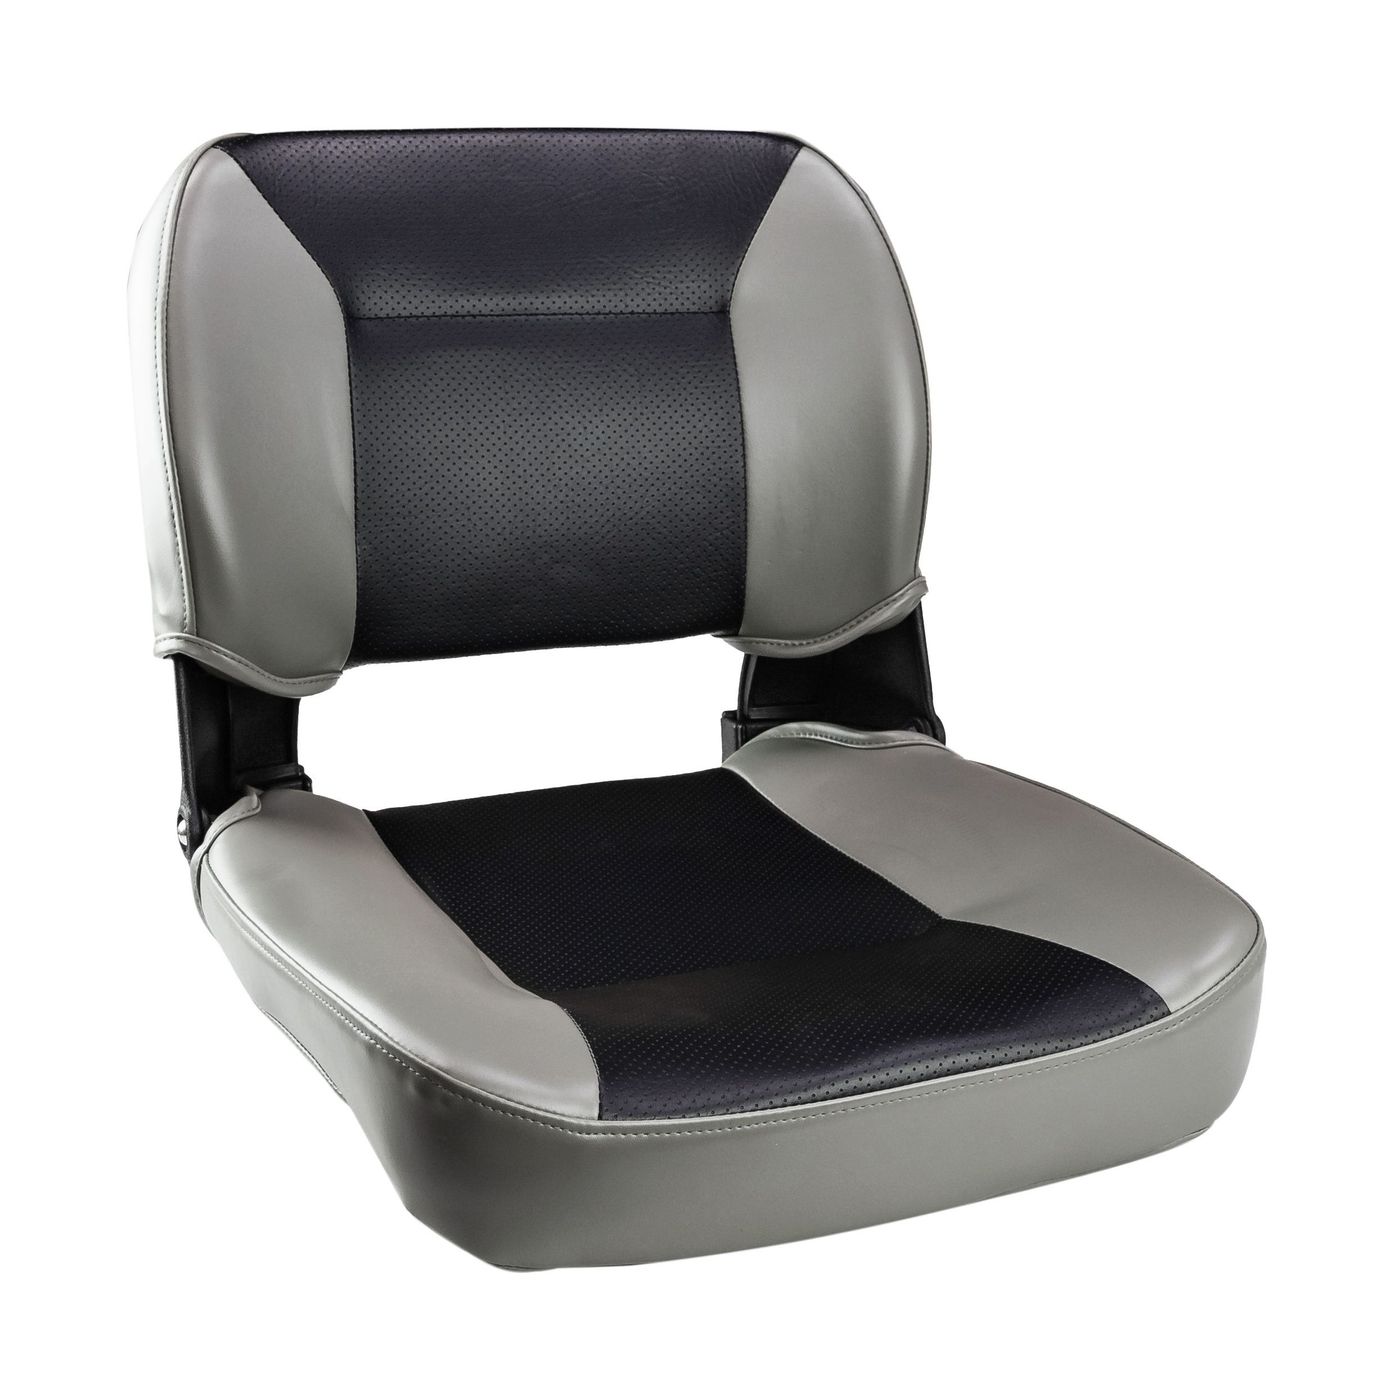 Кресло складное, цвет серый/черный C12510GB кресло мягкое складное classic обивка винил серый 75102gc mr